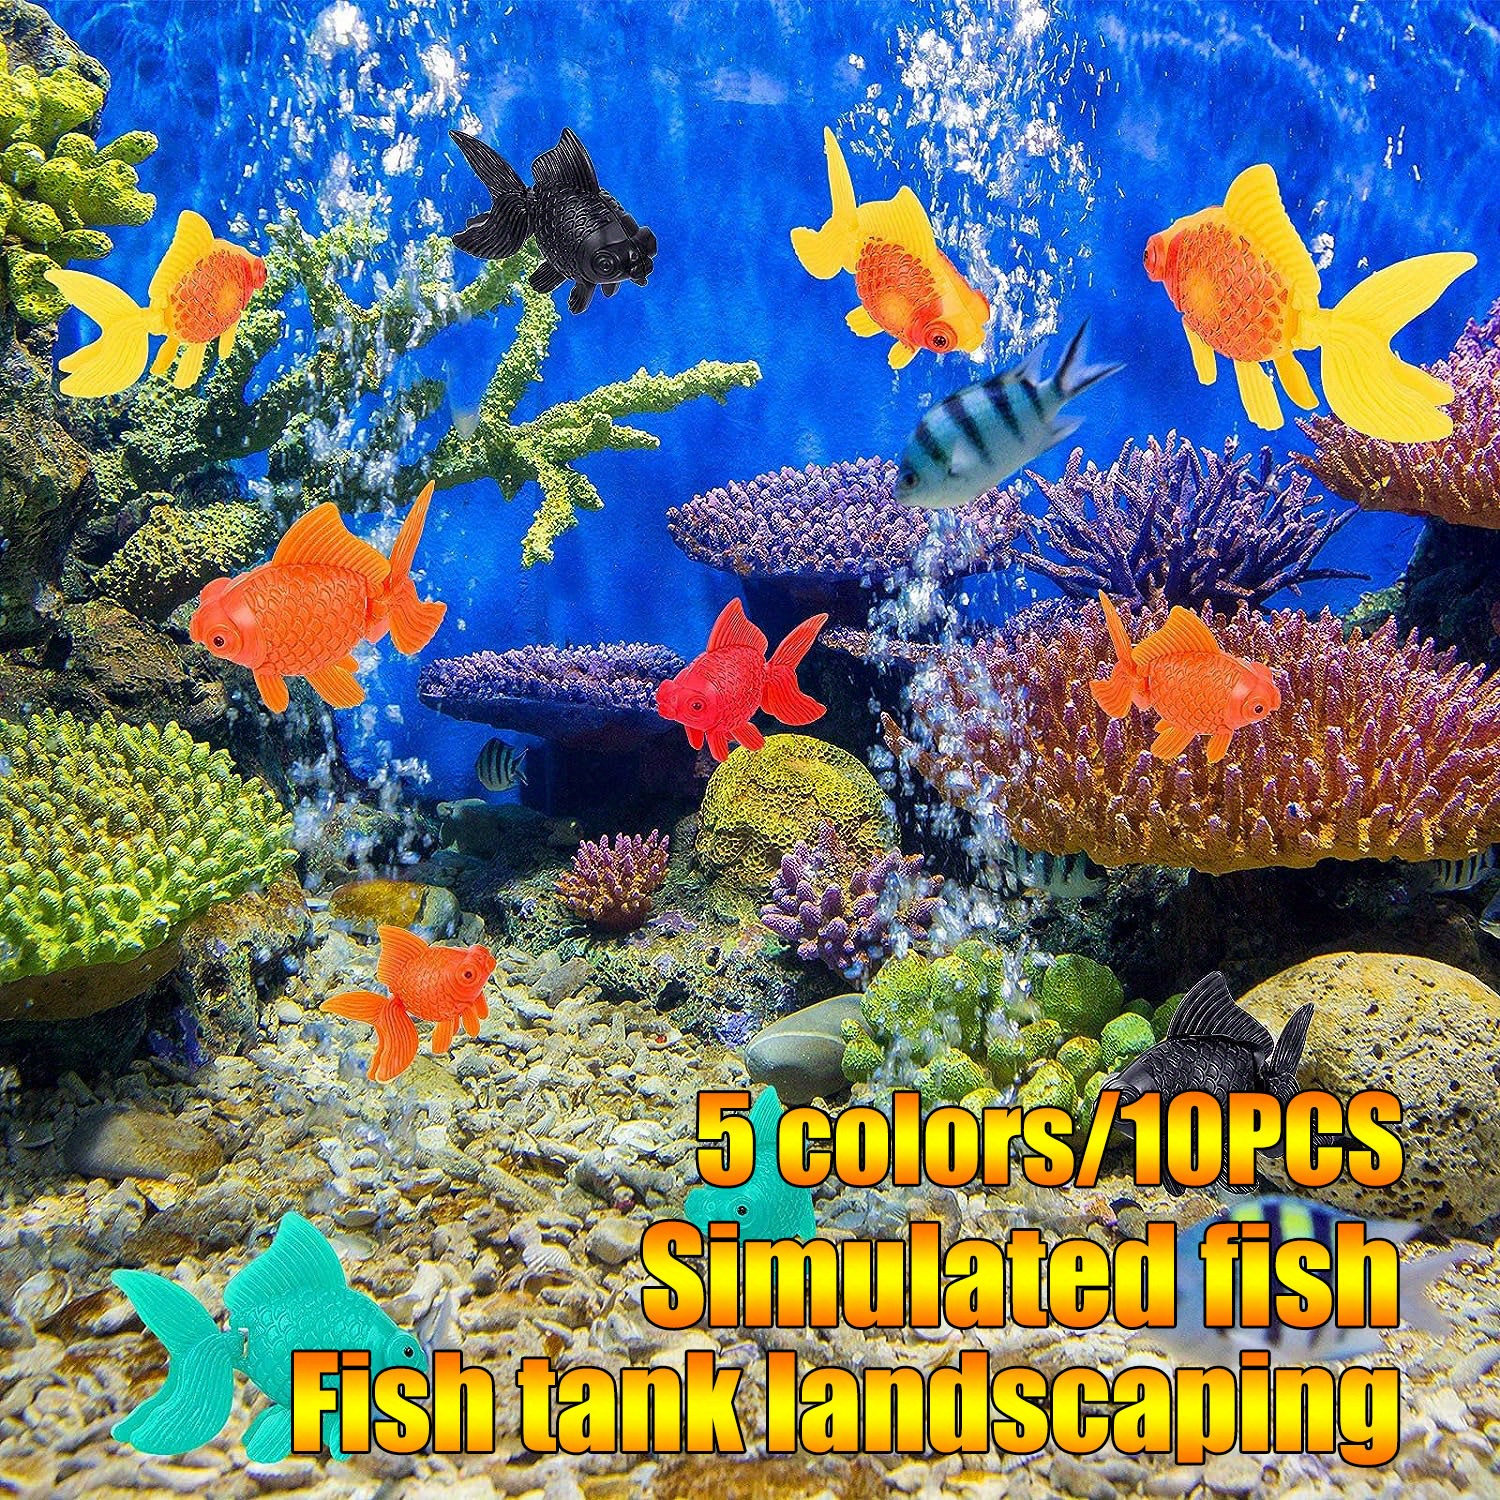 4 pièces aquarium poissons artificiels poissons flottants